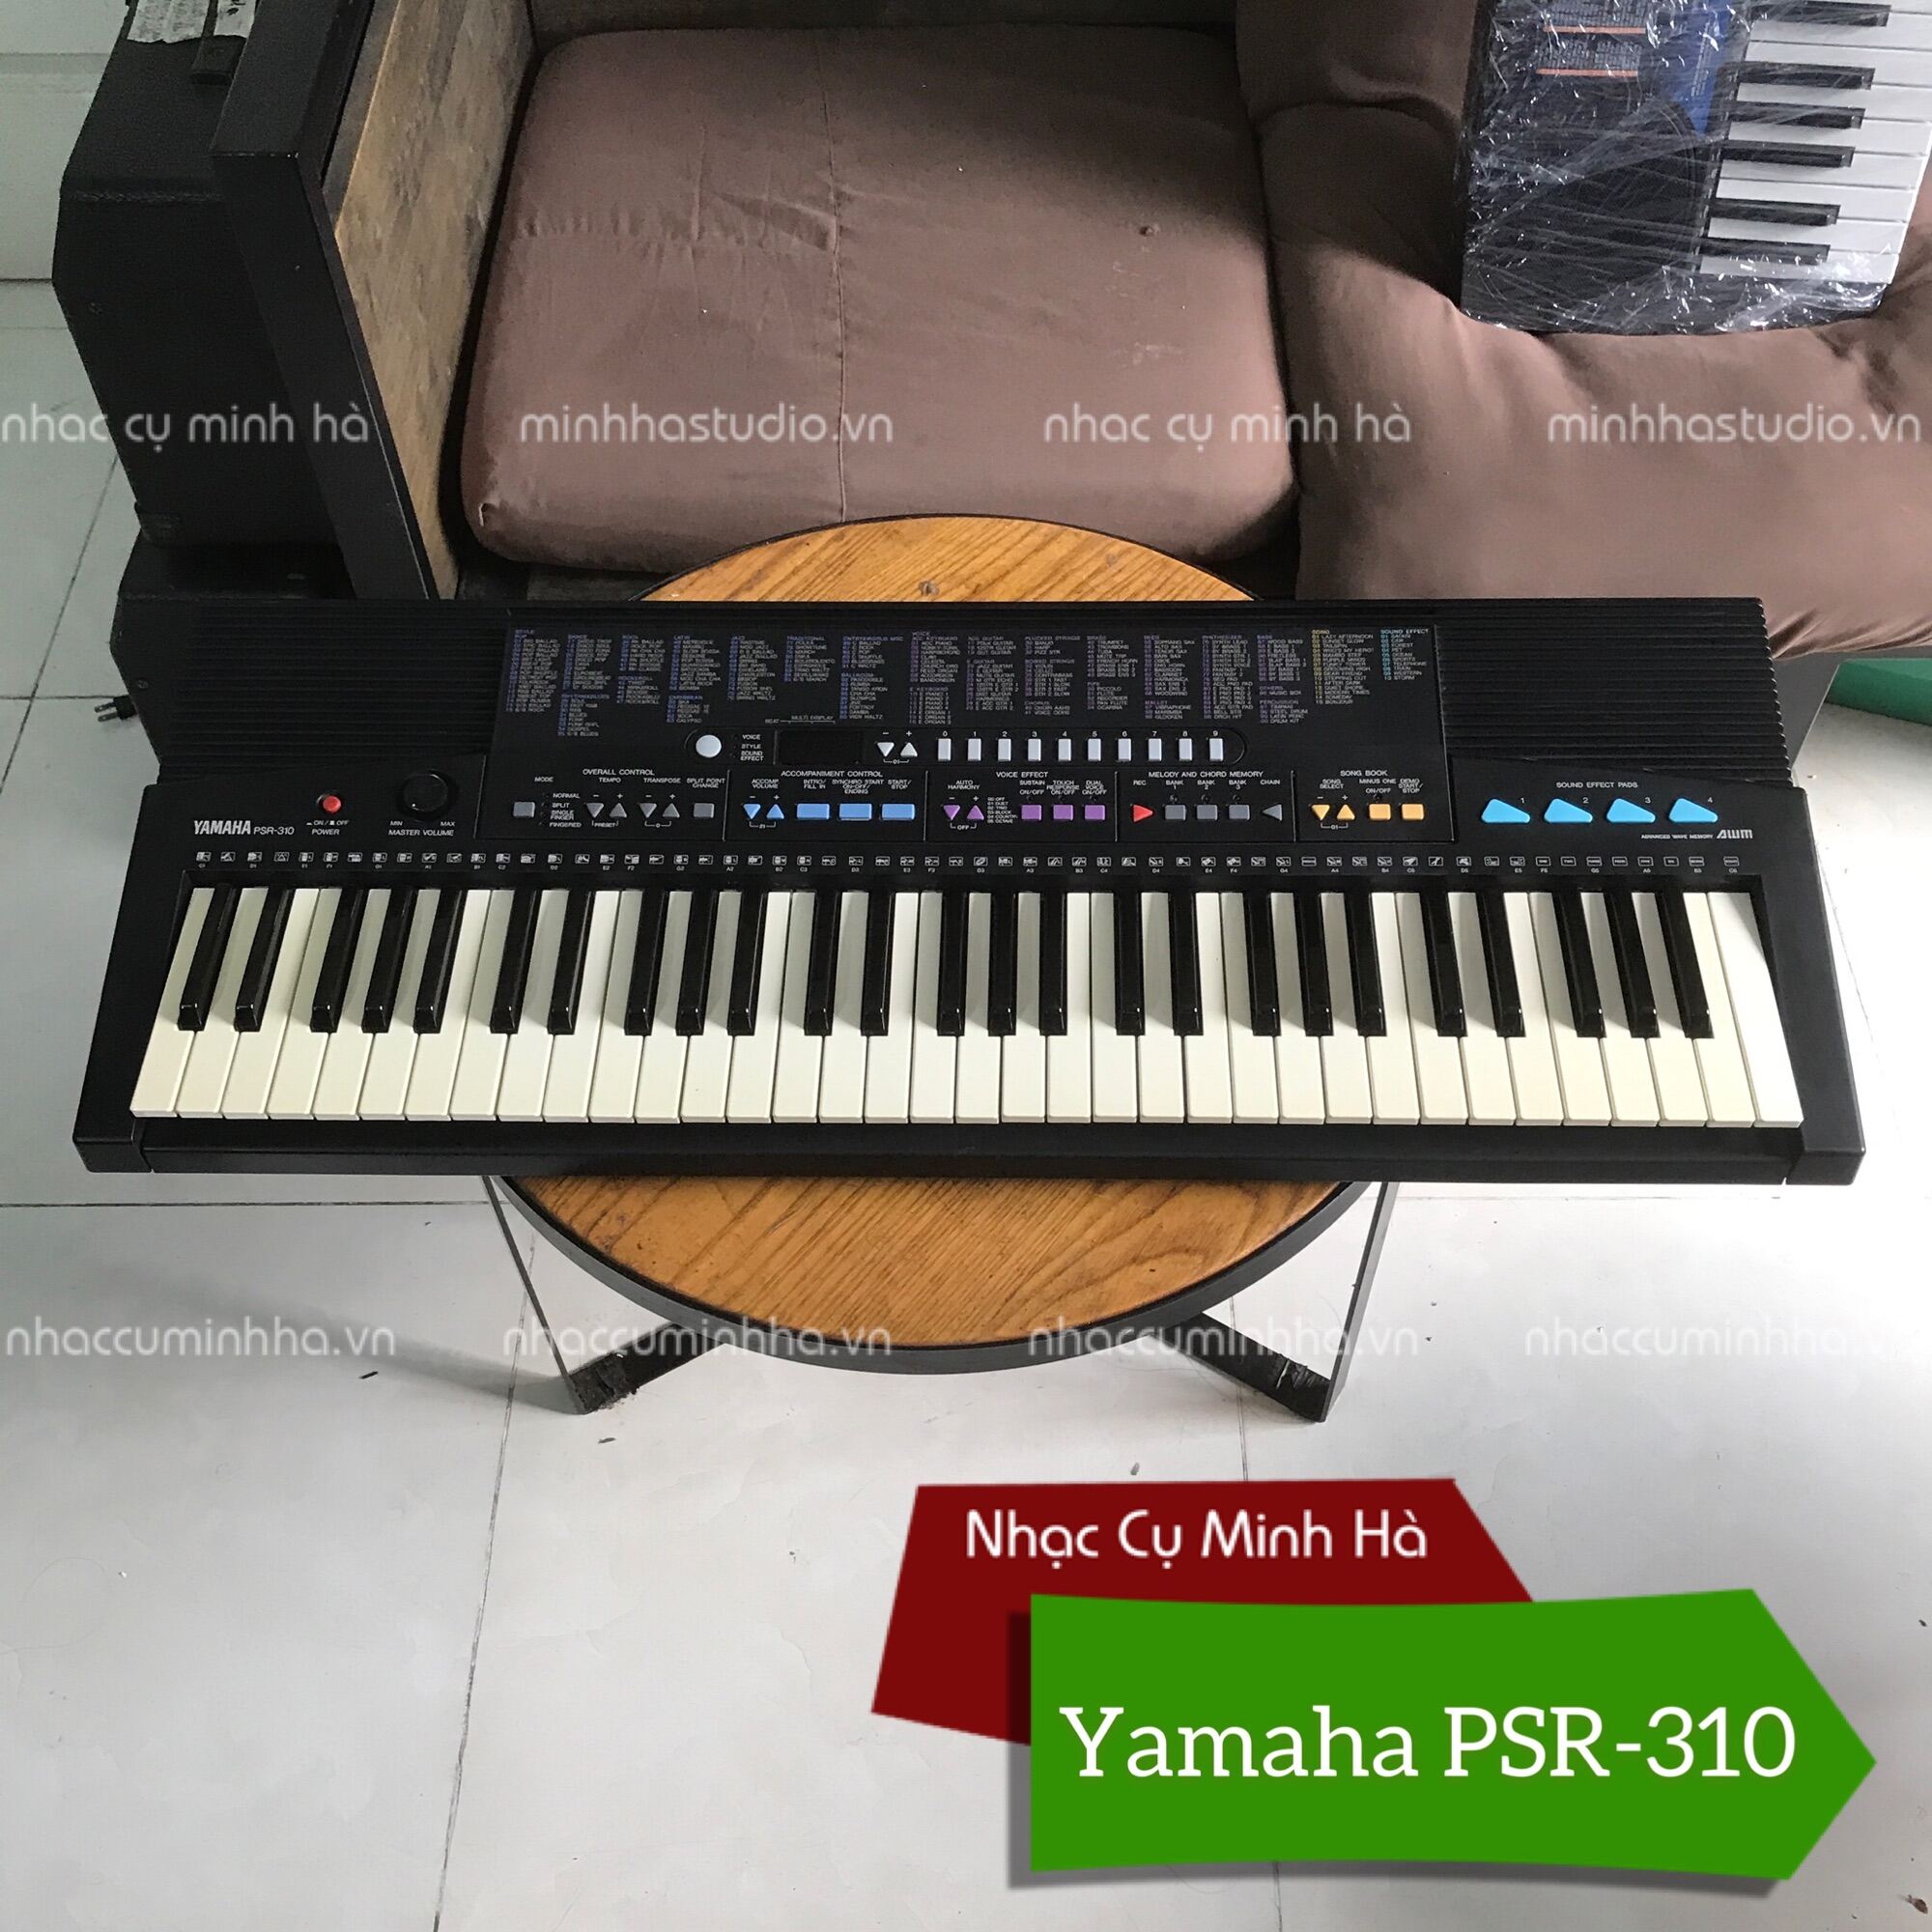 Đàn Organ Yamaha PSR-310 chinh hãng, phím cảm ứng touch, âm thanh rất hay